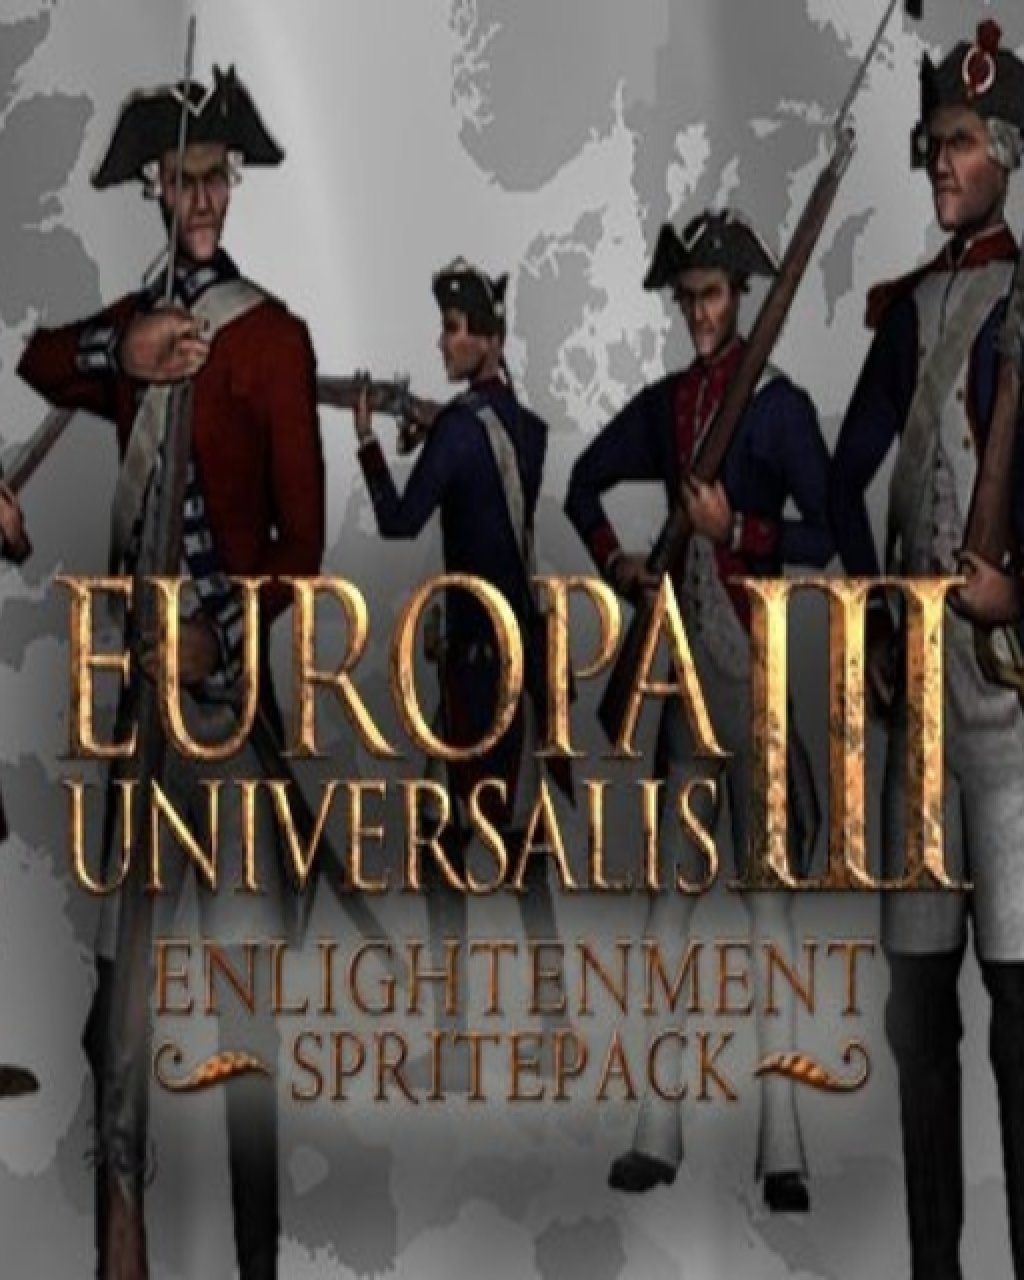 Europa Universalis III Enlightenment SpritePack